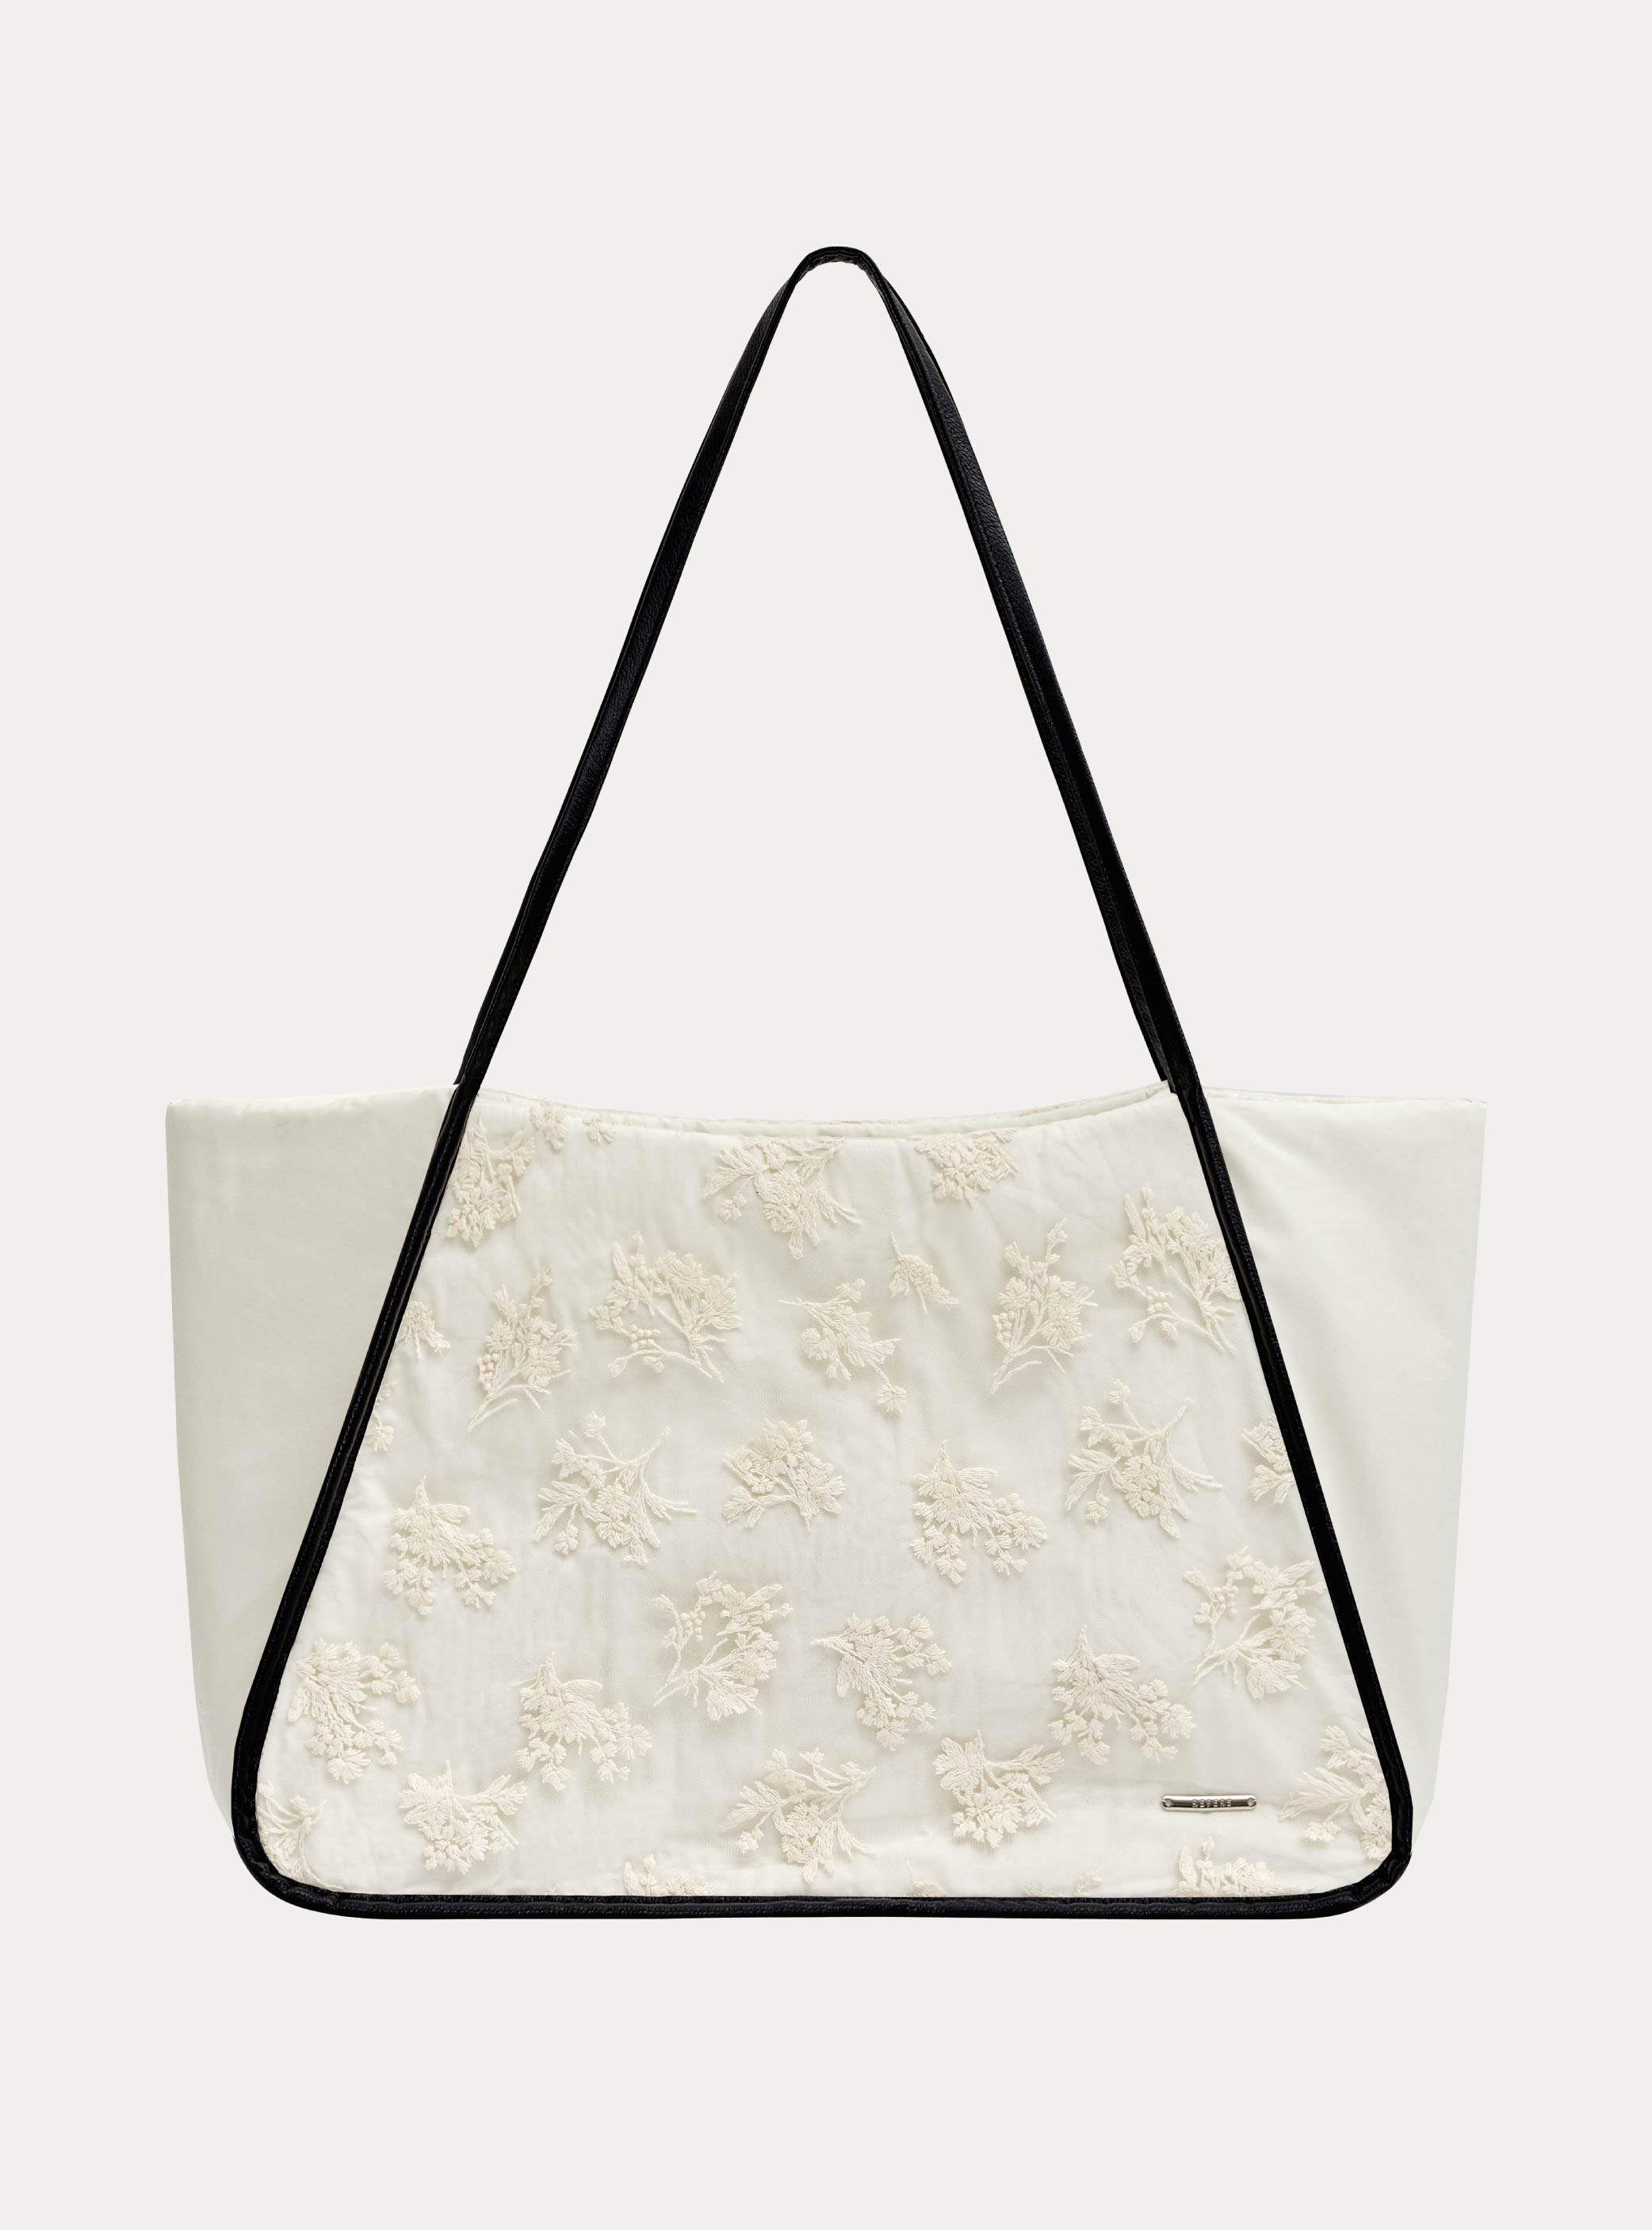 이그리트 레이스 토트백  Ygritte lace tote bag (1color)